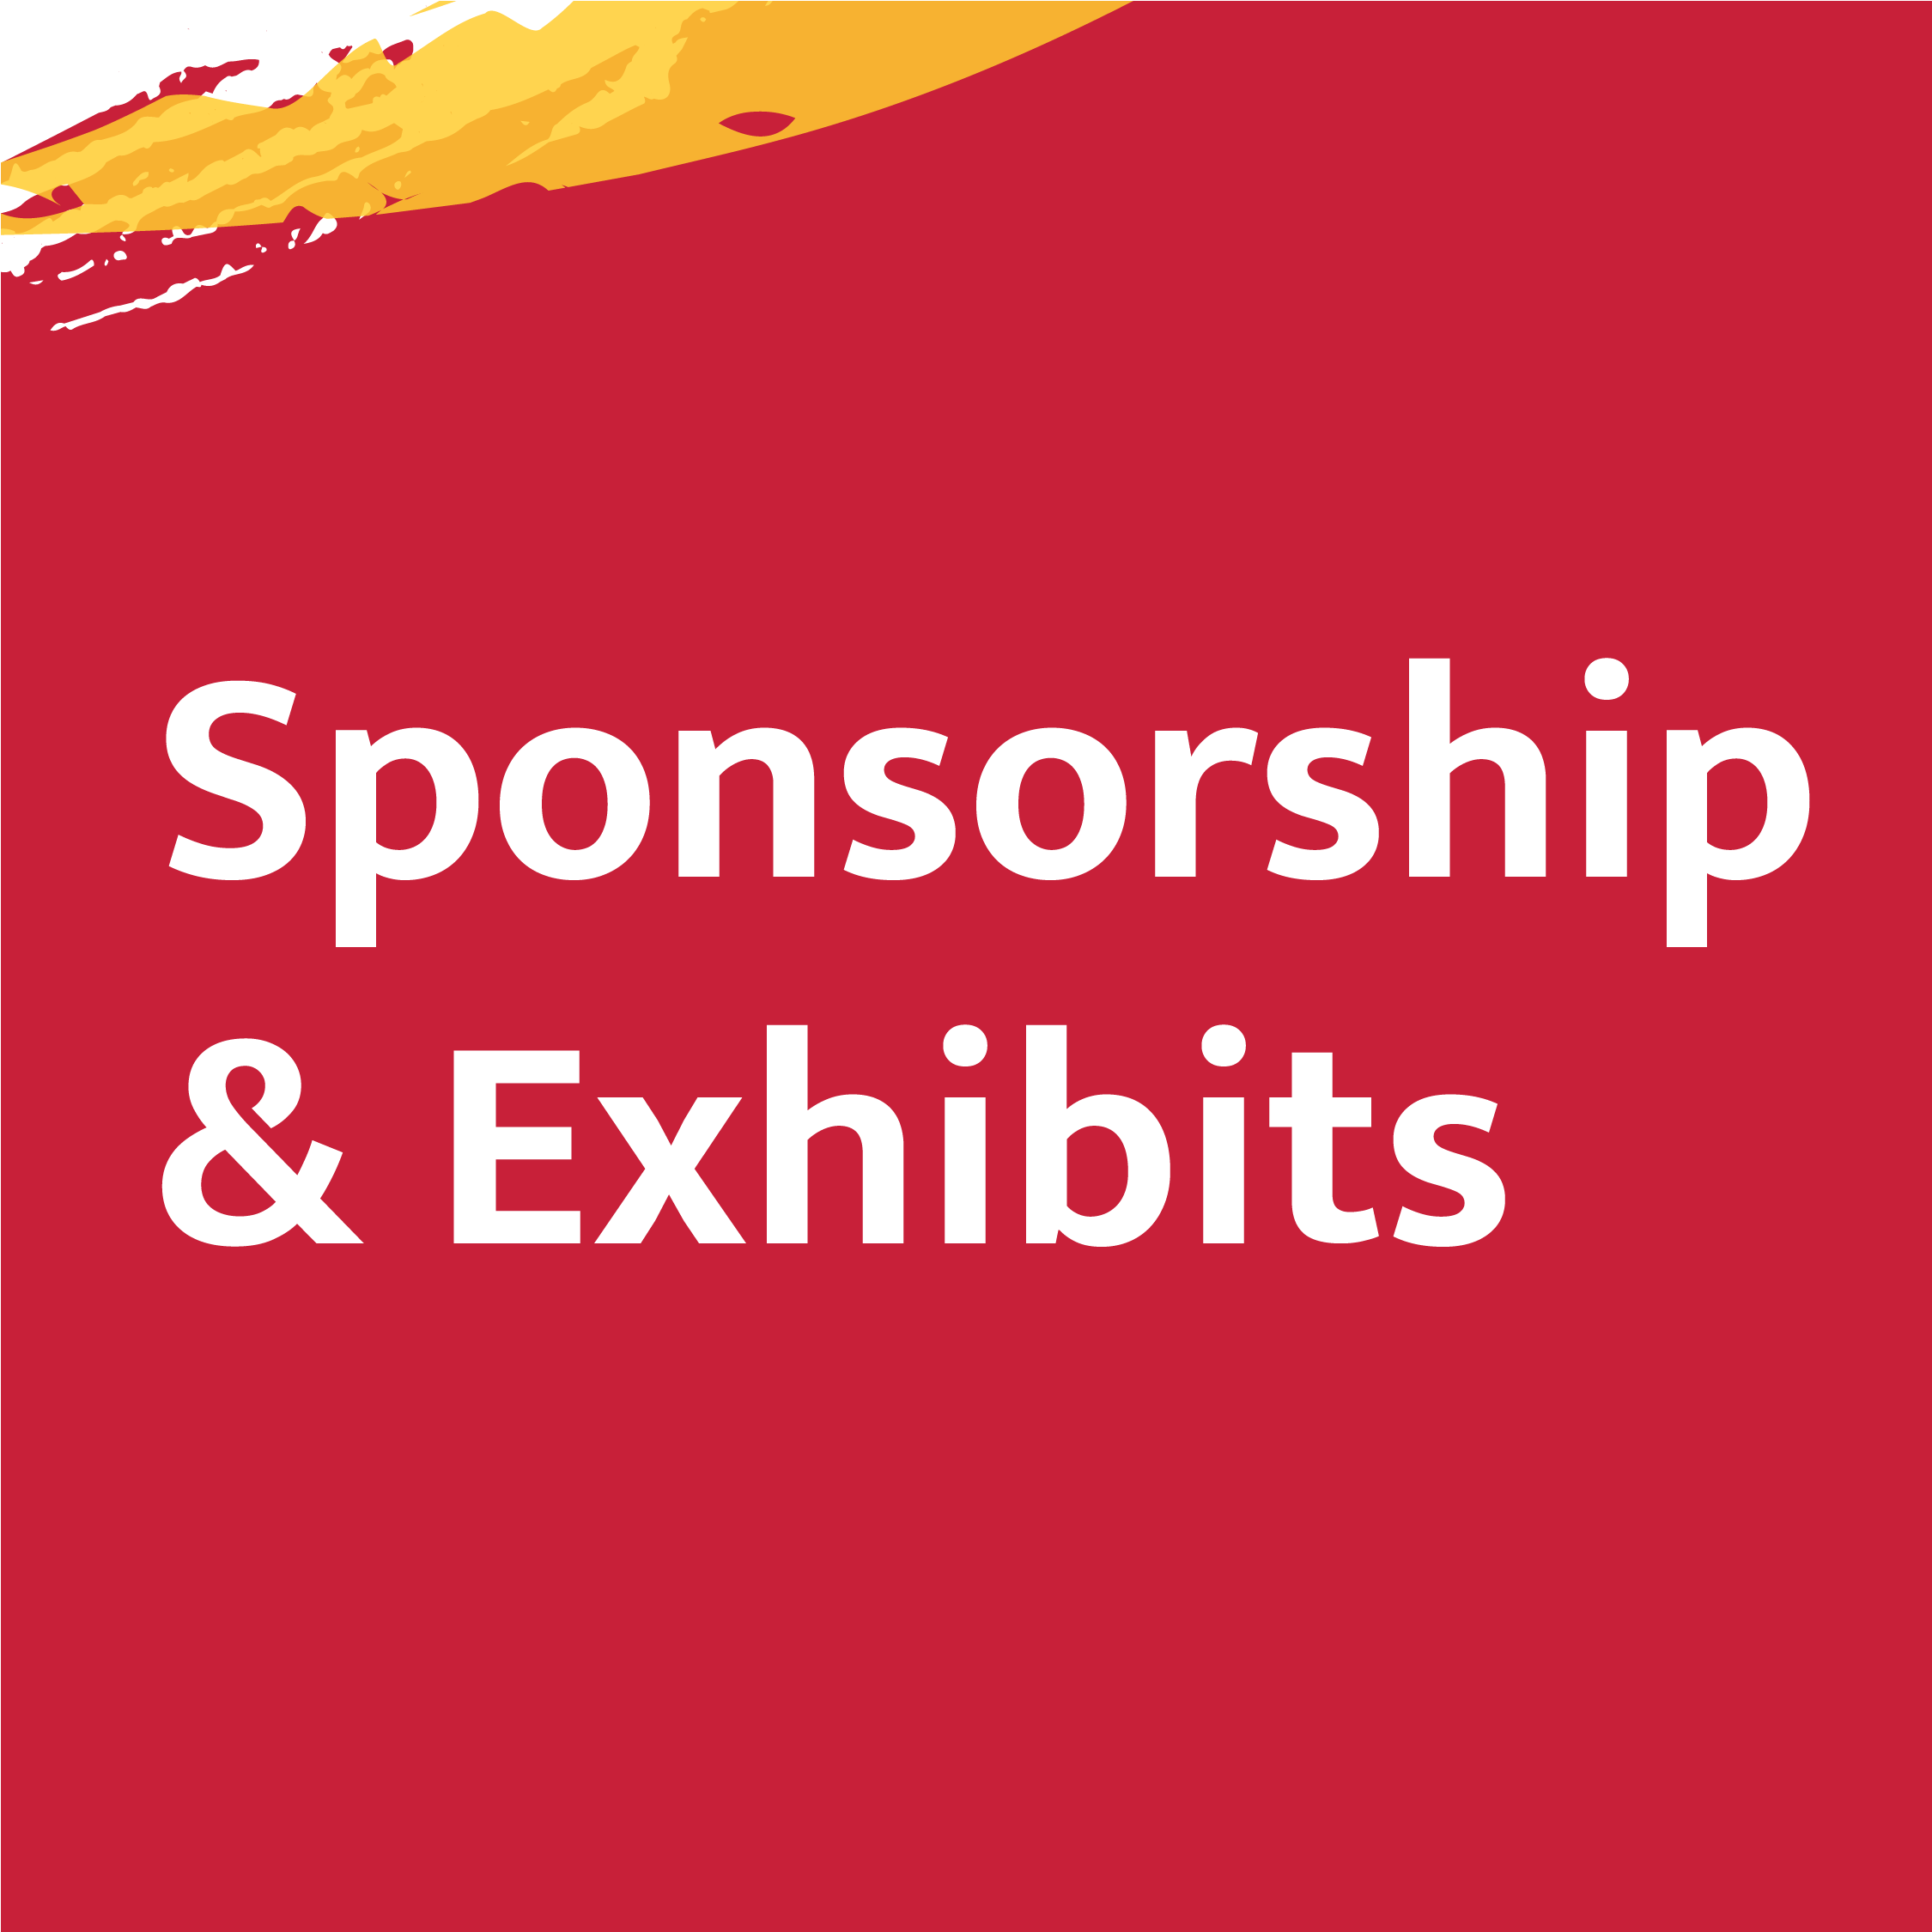 Sponsorship & Exhibits Graphic